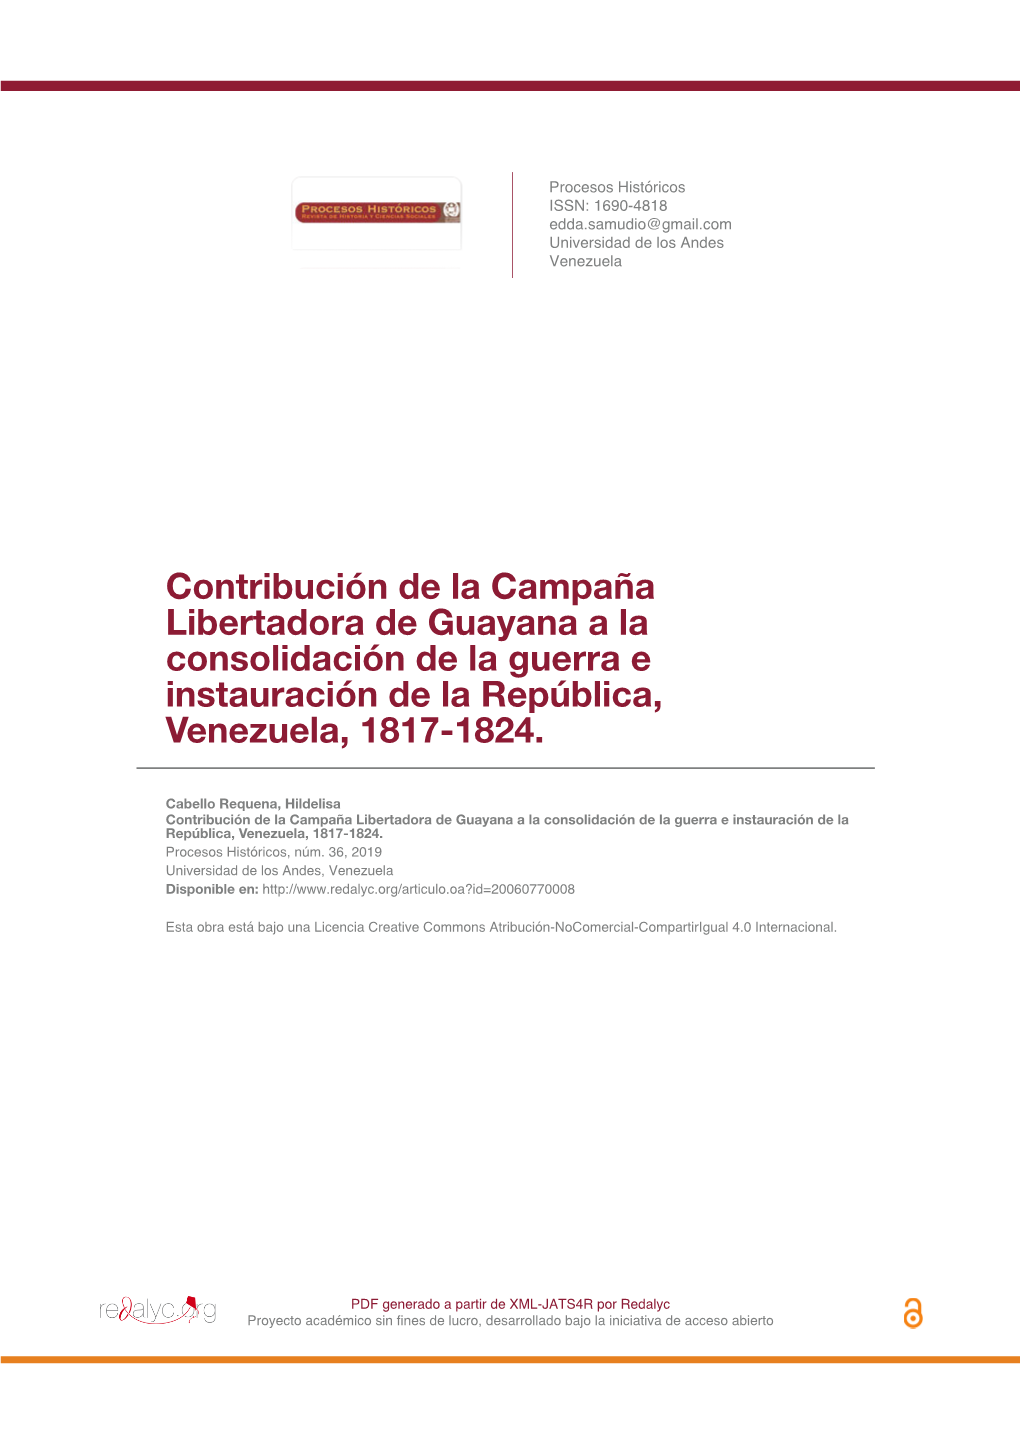 Contribución De La Campaña Libertadora De Guayana a La Consolidación De La Guerra E Instauración De La República, Venezuela, 1817-1824